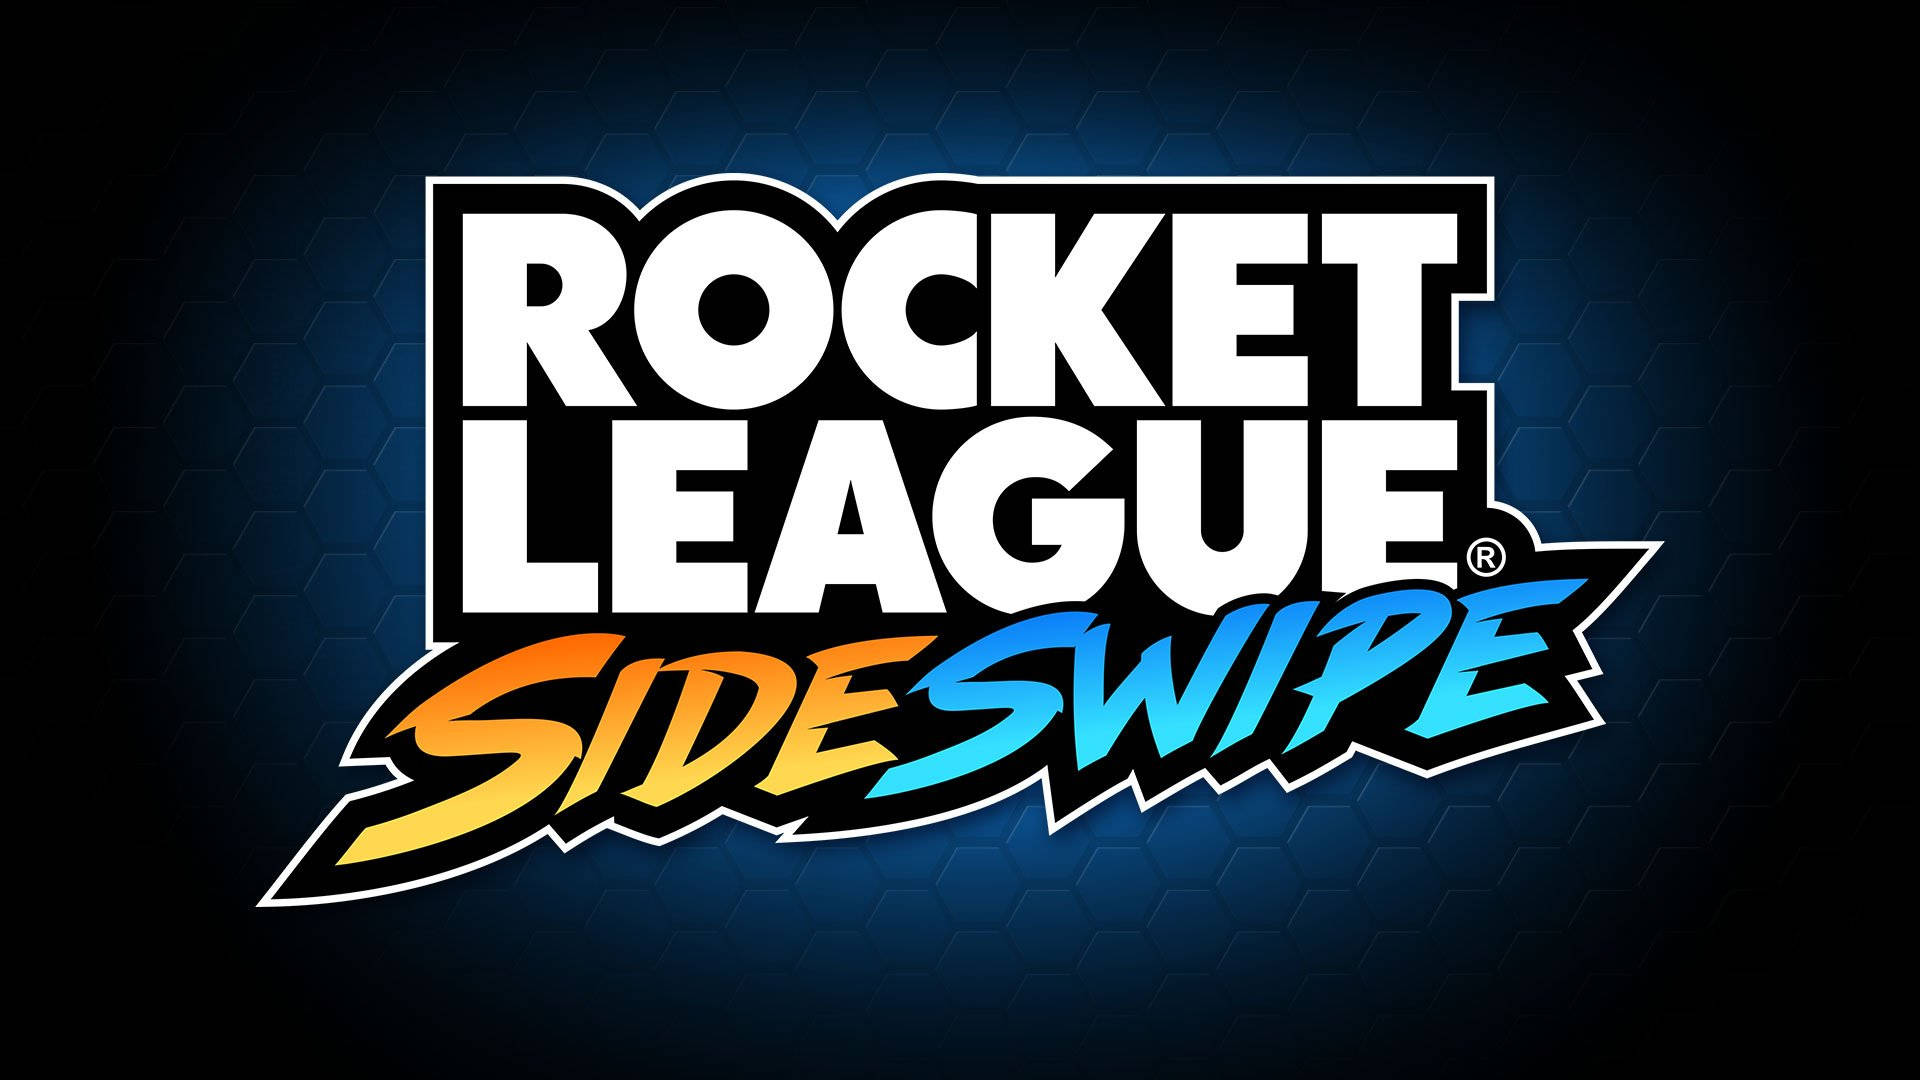 Rocket League Sideswipe Digital Poster